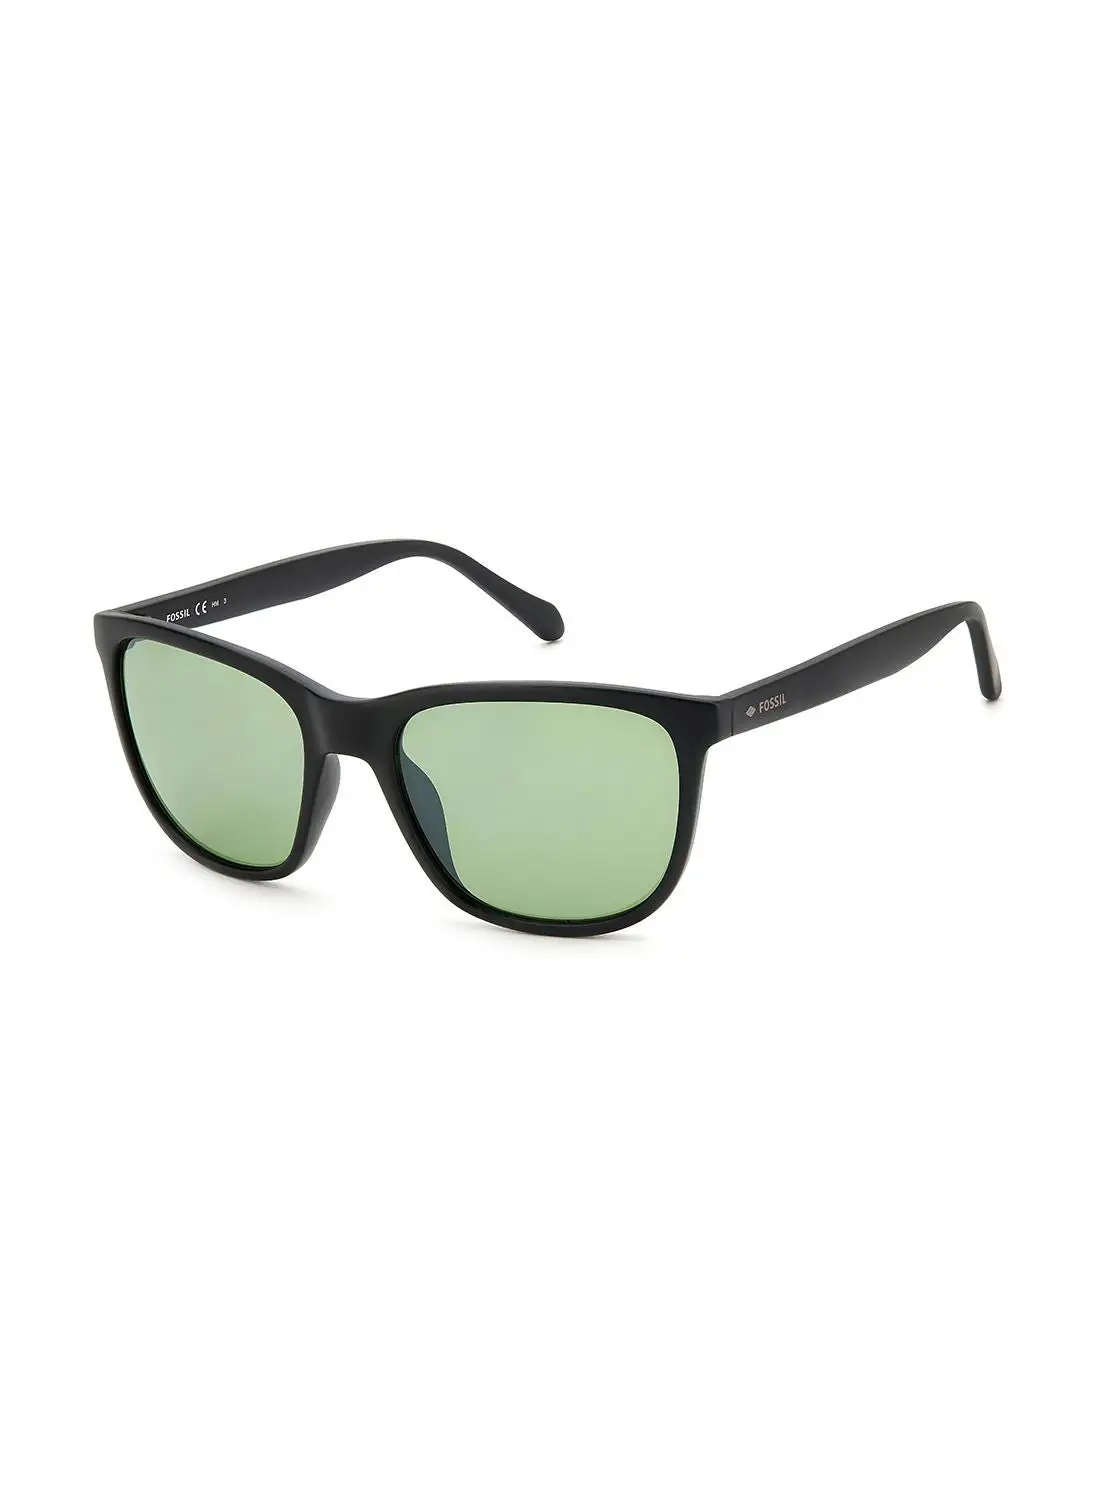 FOSSIL Men's UV Protection Rectangular Sunglasses - Fos 3145/S Mtt Black 55 - Lens Size: 55 Mm